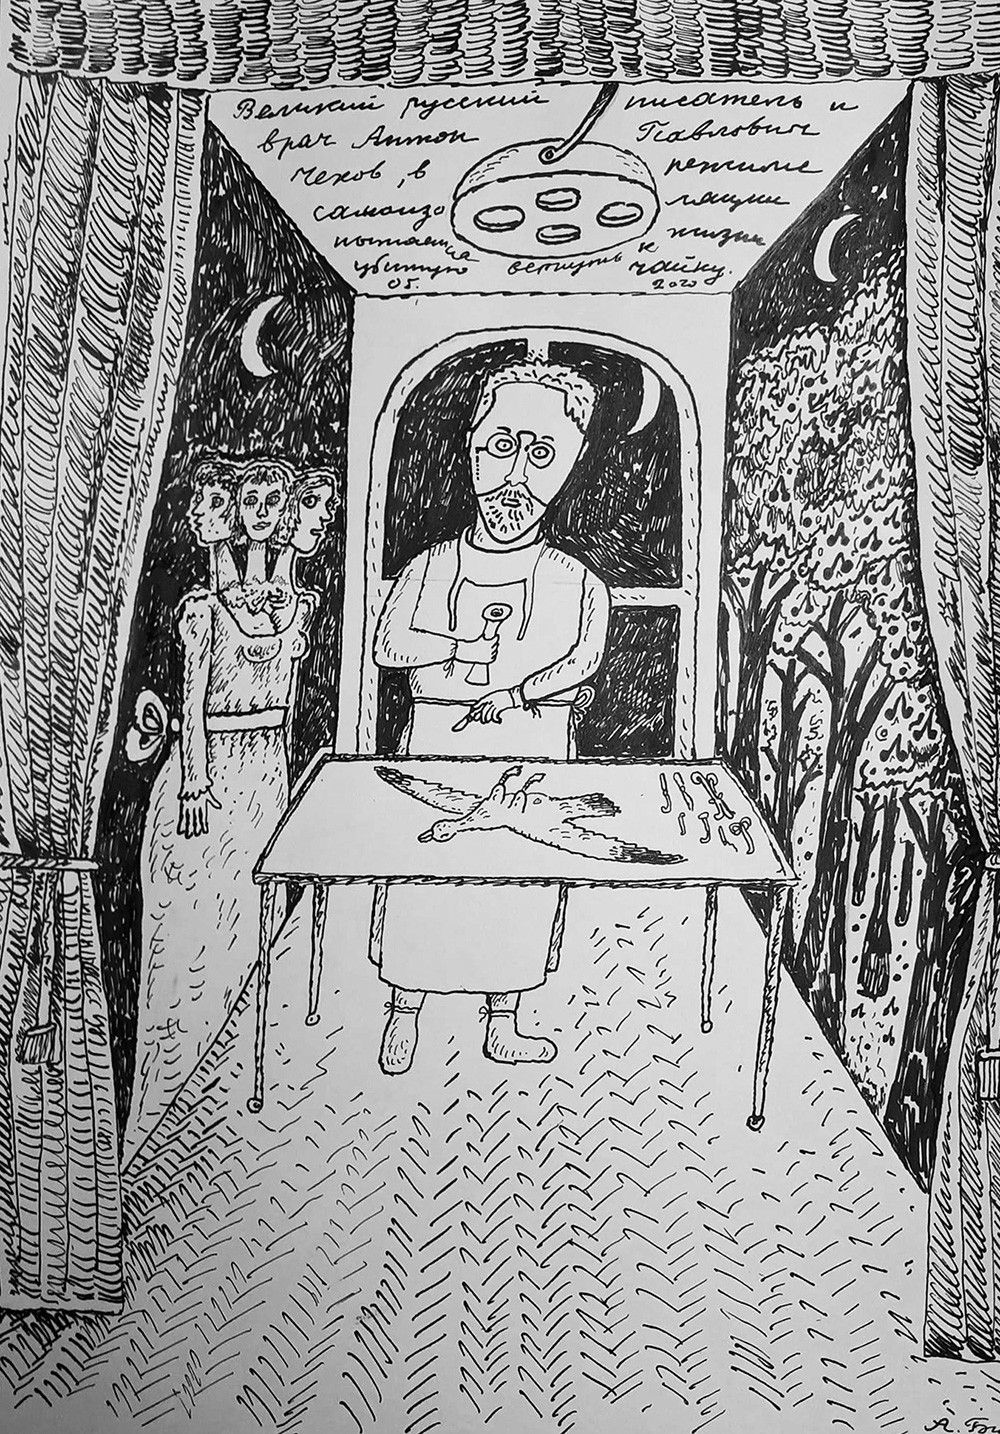 El gran escritor y médico ruso Antón Chejov trata de resucitar una gaviota muerta durante un periodo de autoaislamiento [símbolo en su obra La gaviota]
